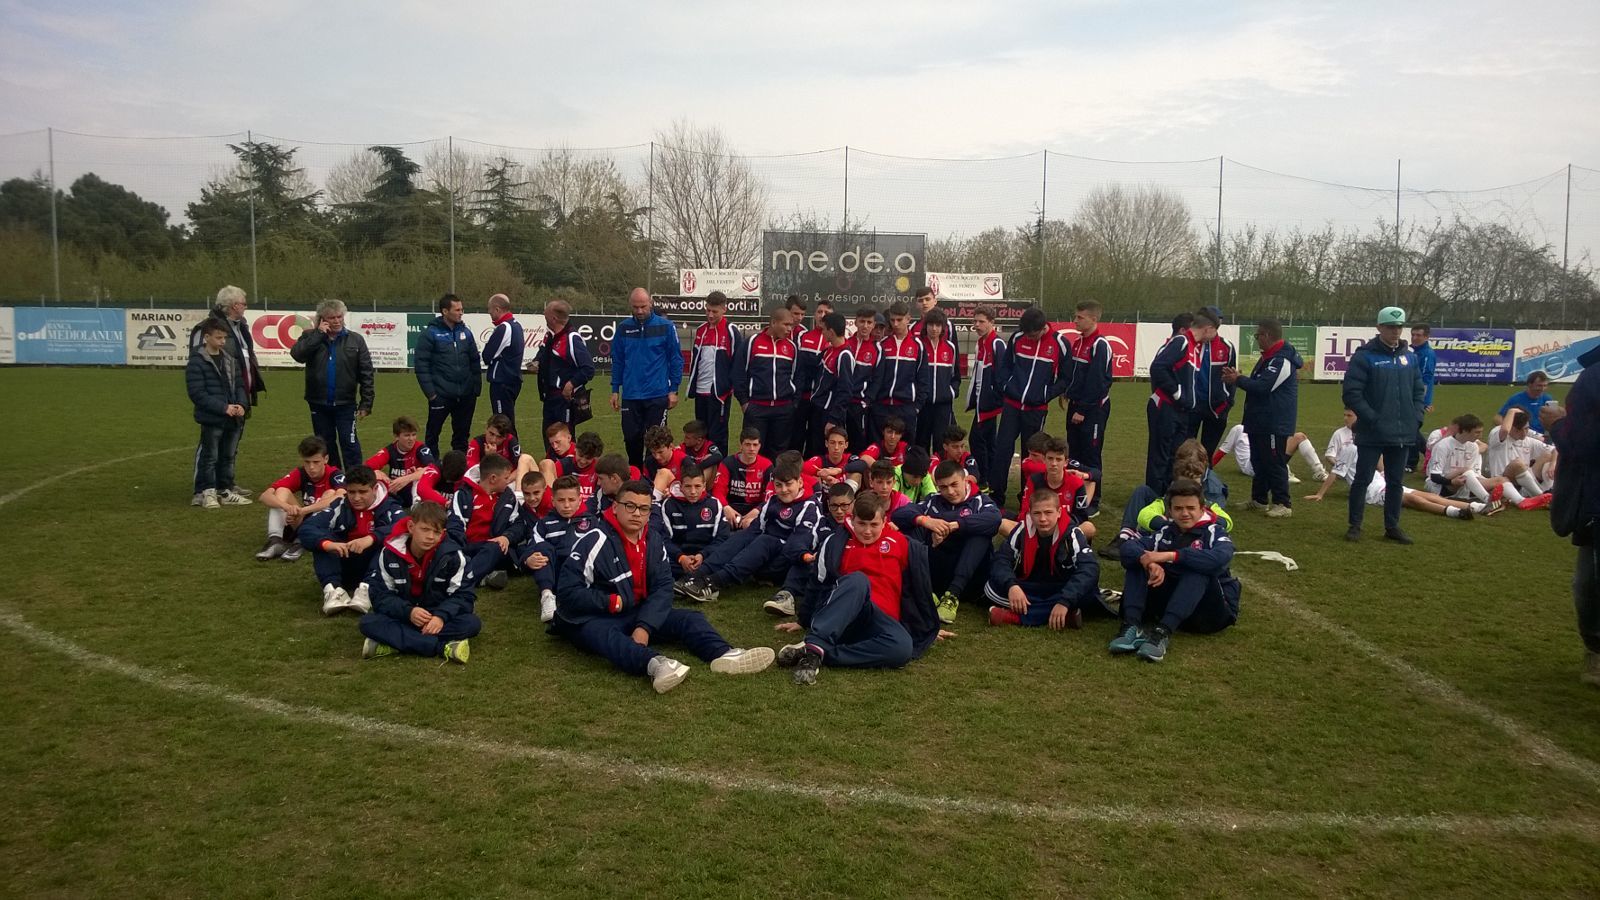 Casilina calcio, tre gruppi giovanili a testa altissima nella prima “Scouting Cup Carpi” a Venezia